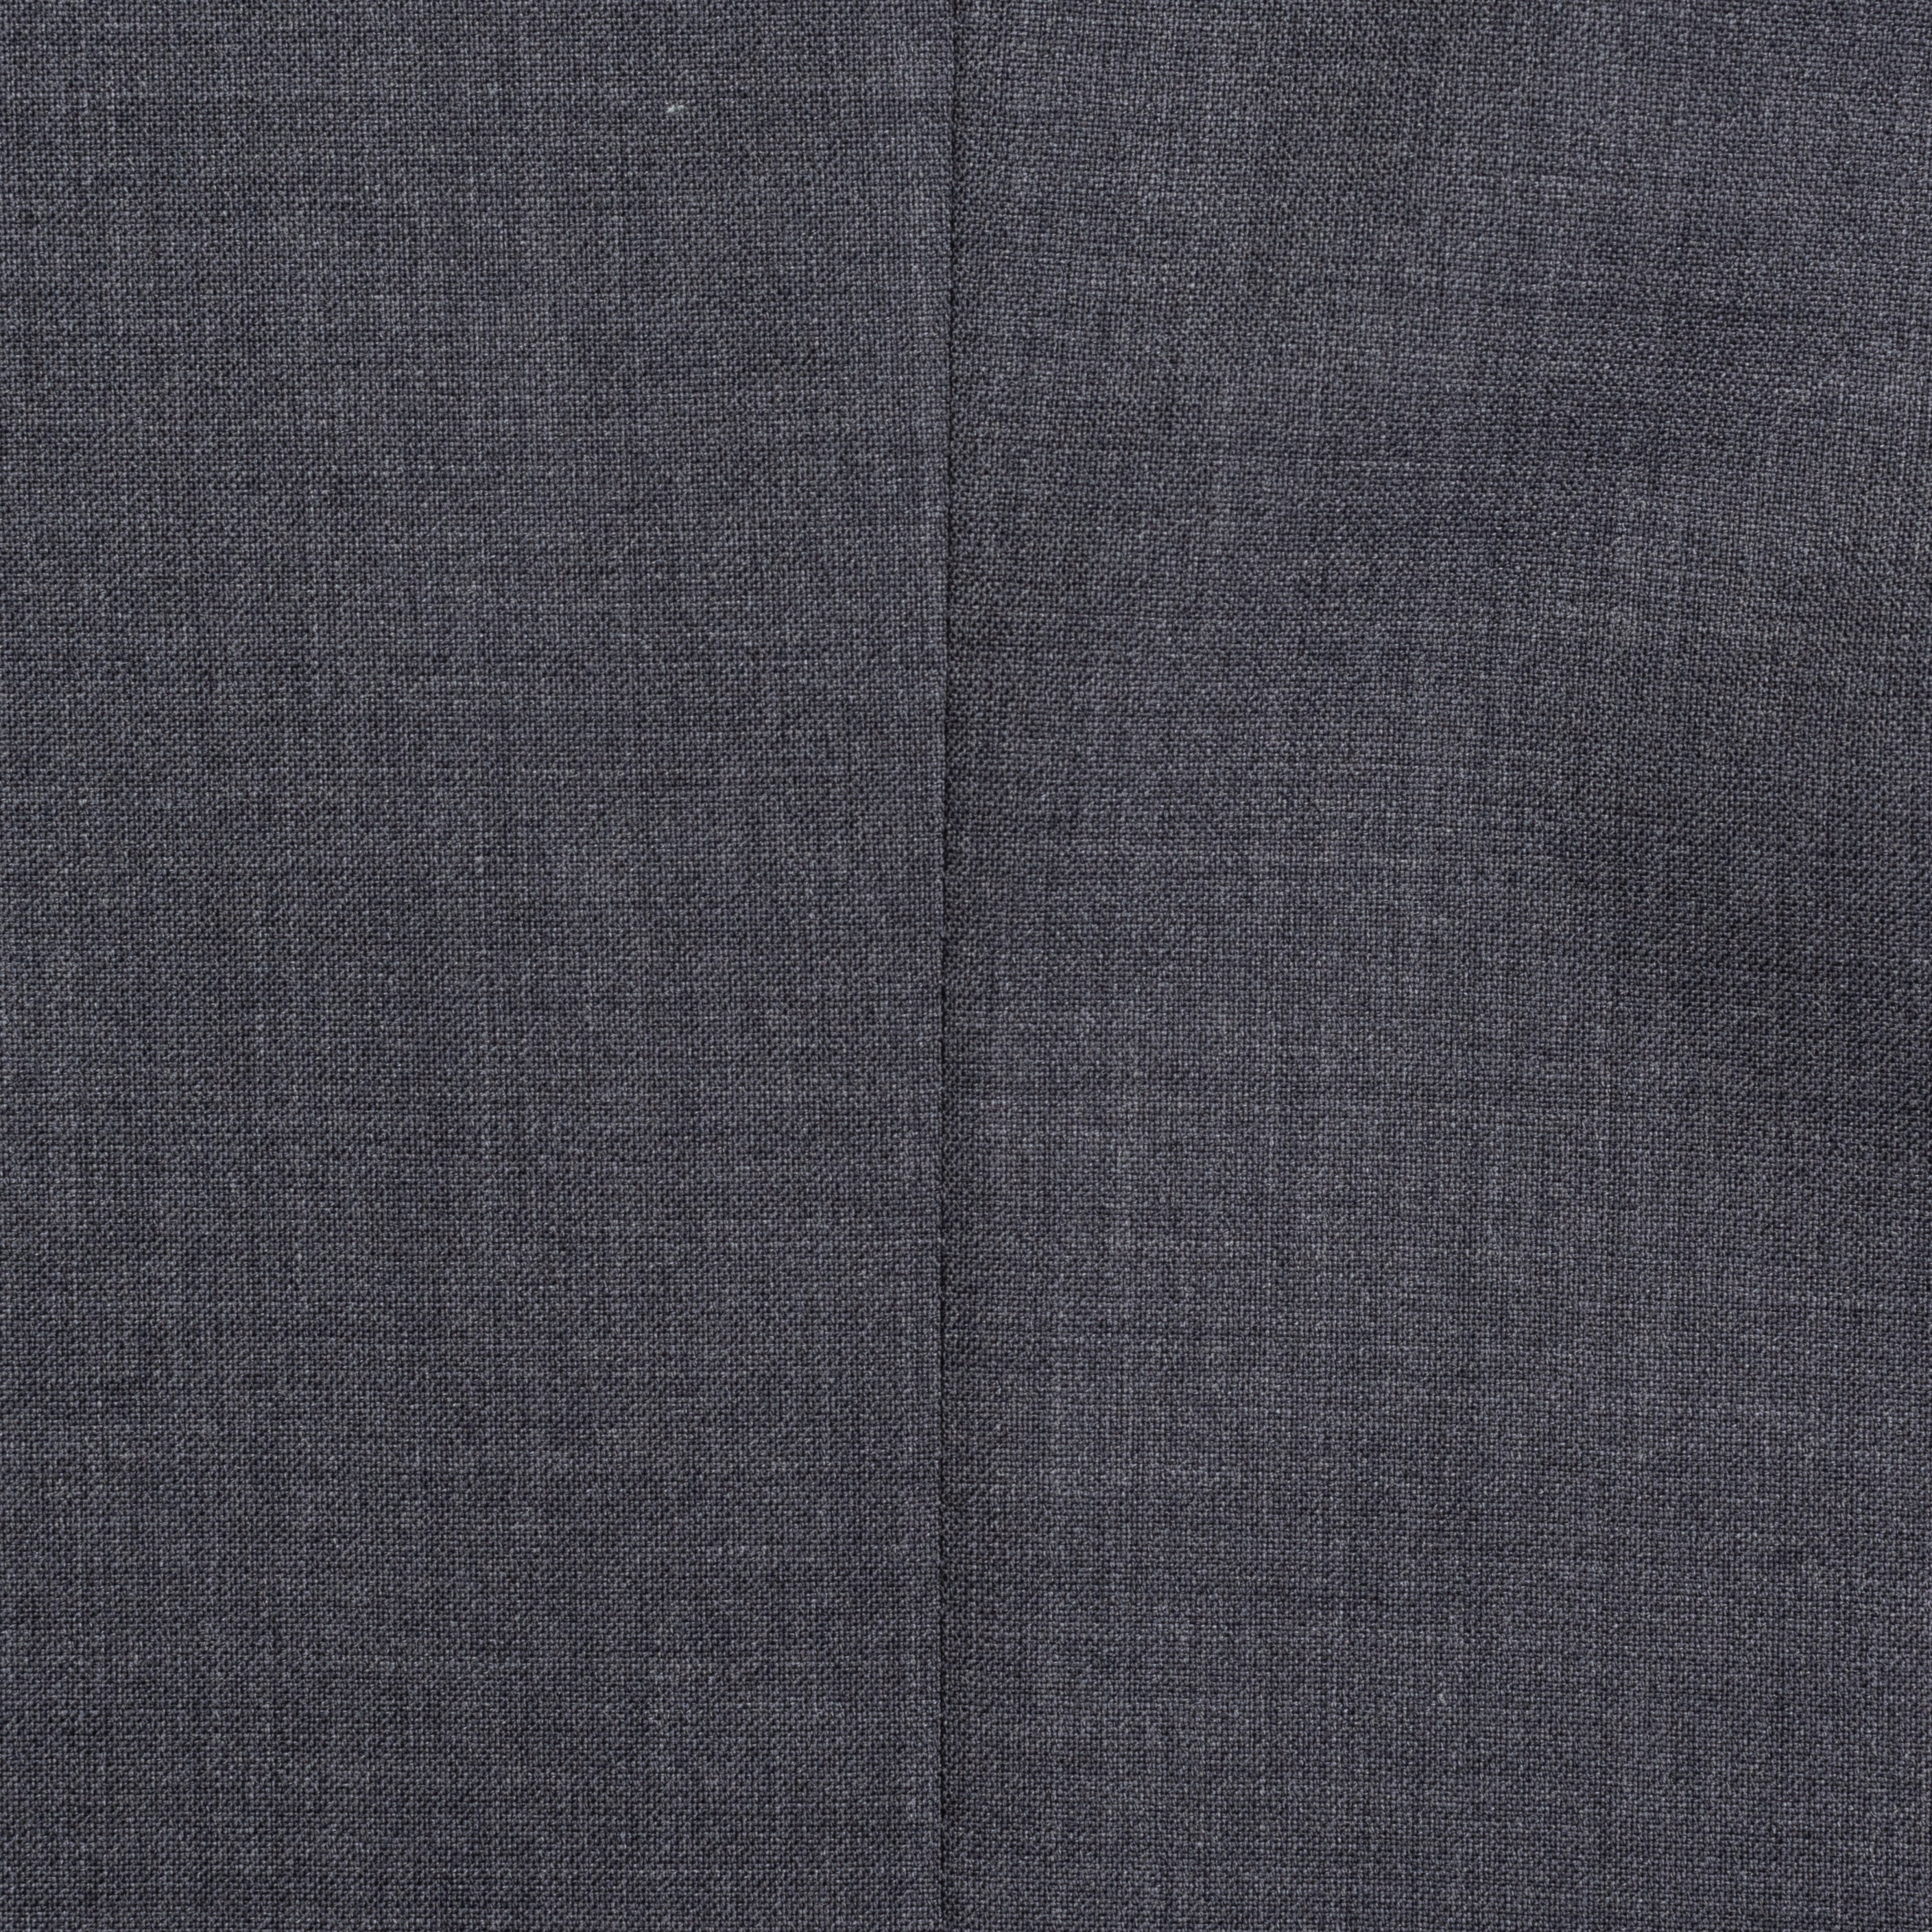 SARTORIA CASTANGIA Handmade Gray Wool Super 140's Jacket EU 52 NEW US 42 CASTANGIA